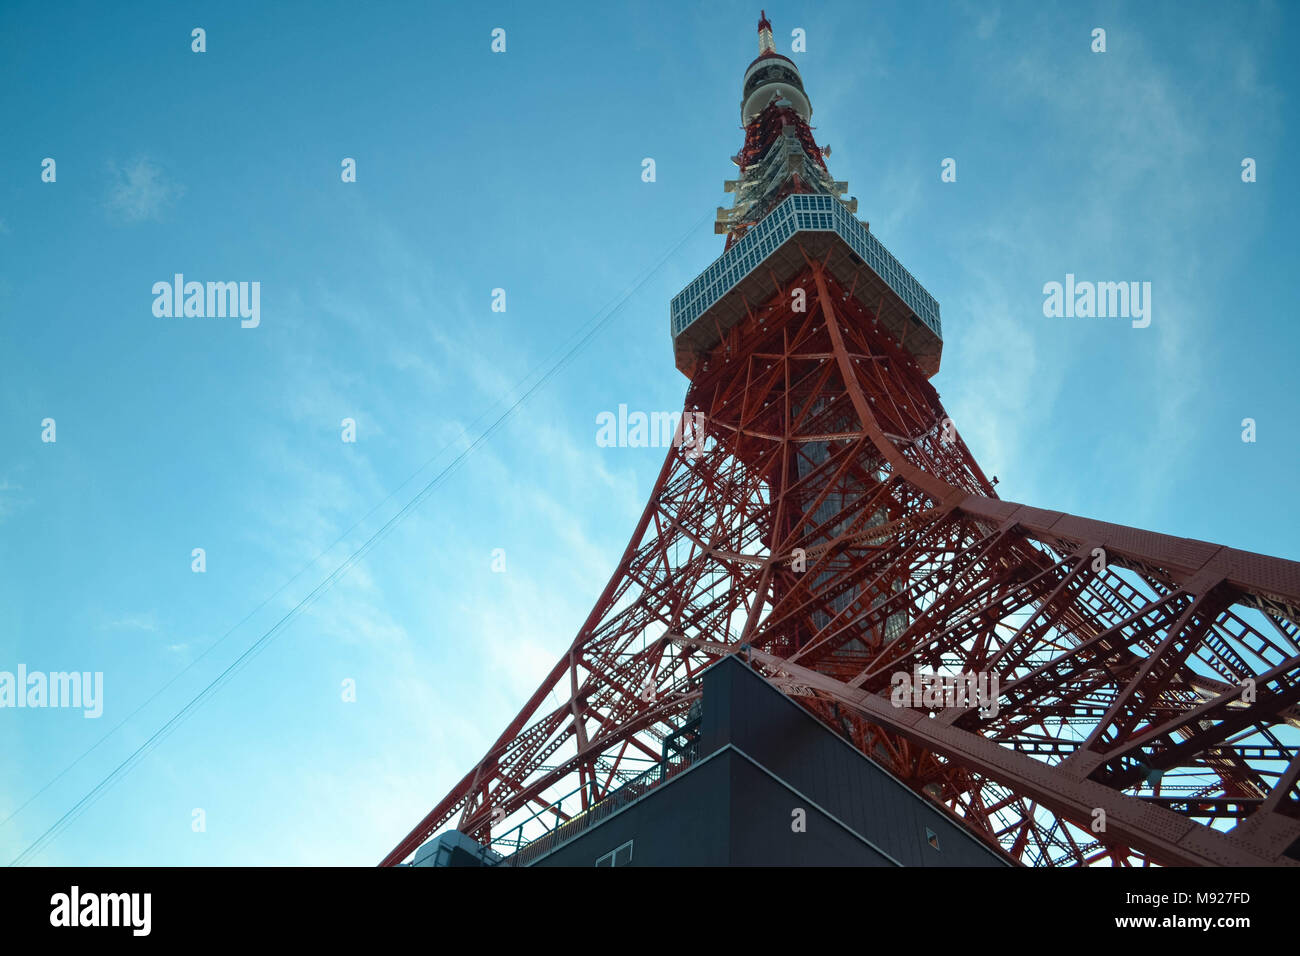 Tokyo, Tokyo, Cina. 22 Mar, 2018. Tokyo, Giappone-22 Marzo 2018: la Torre di Tokyo è una comunicazione e torre di osservazione a Shiba-koen distretto di Minato, Tokyo, Giappone. A 332.9 metri (1.092 ft), è il secondo edificio più alto in Giappone. La struttura è una Torre Eiffel-ispirato torre tralicciata che è dipinto di bianco e arancione internazionale per conformarsi con aria norme di sicurezza. Costruito nel 1958, la torre le principali fonti di reddito sono il turismo e l'antenna leasing. Credito: SIPA Asia/ZUMA filo/Alamy Live News Foto Stock